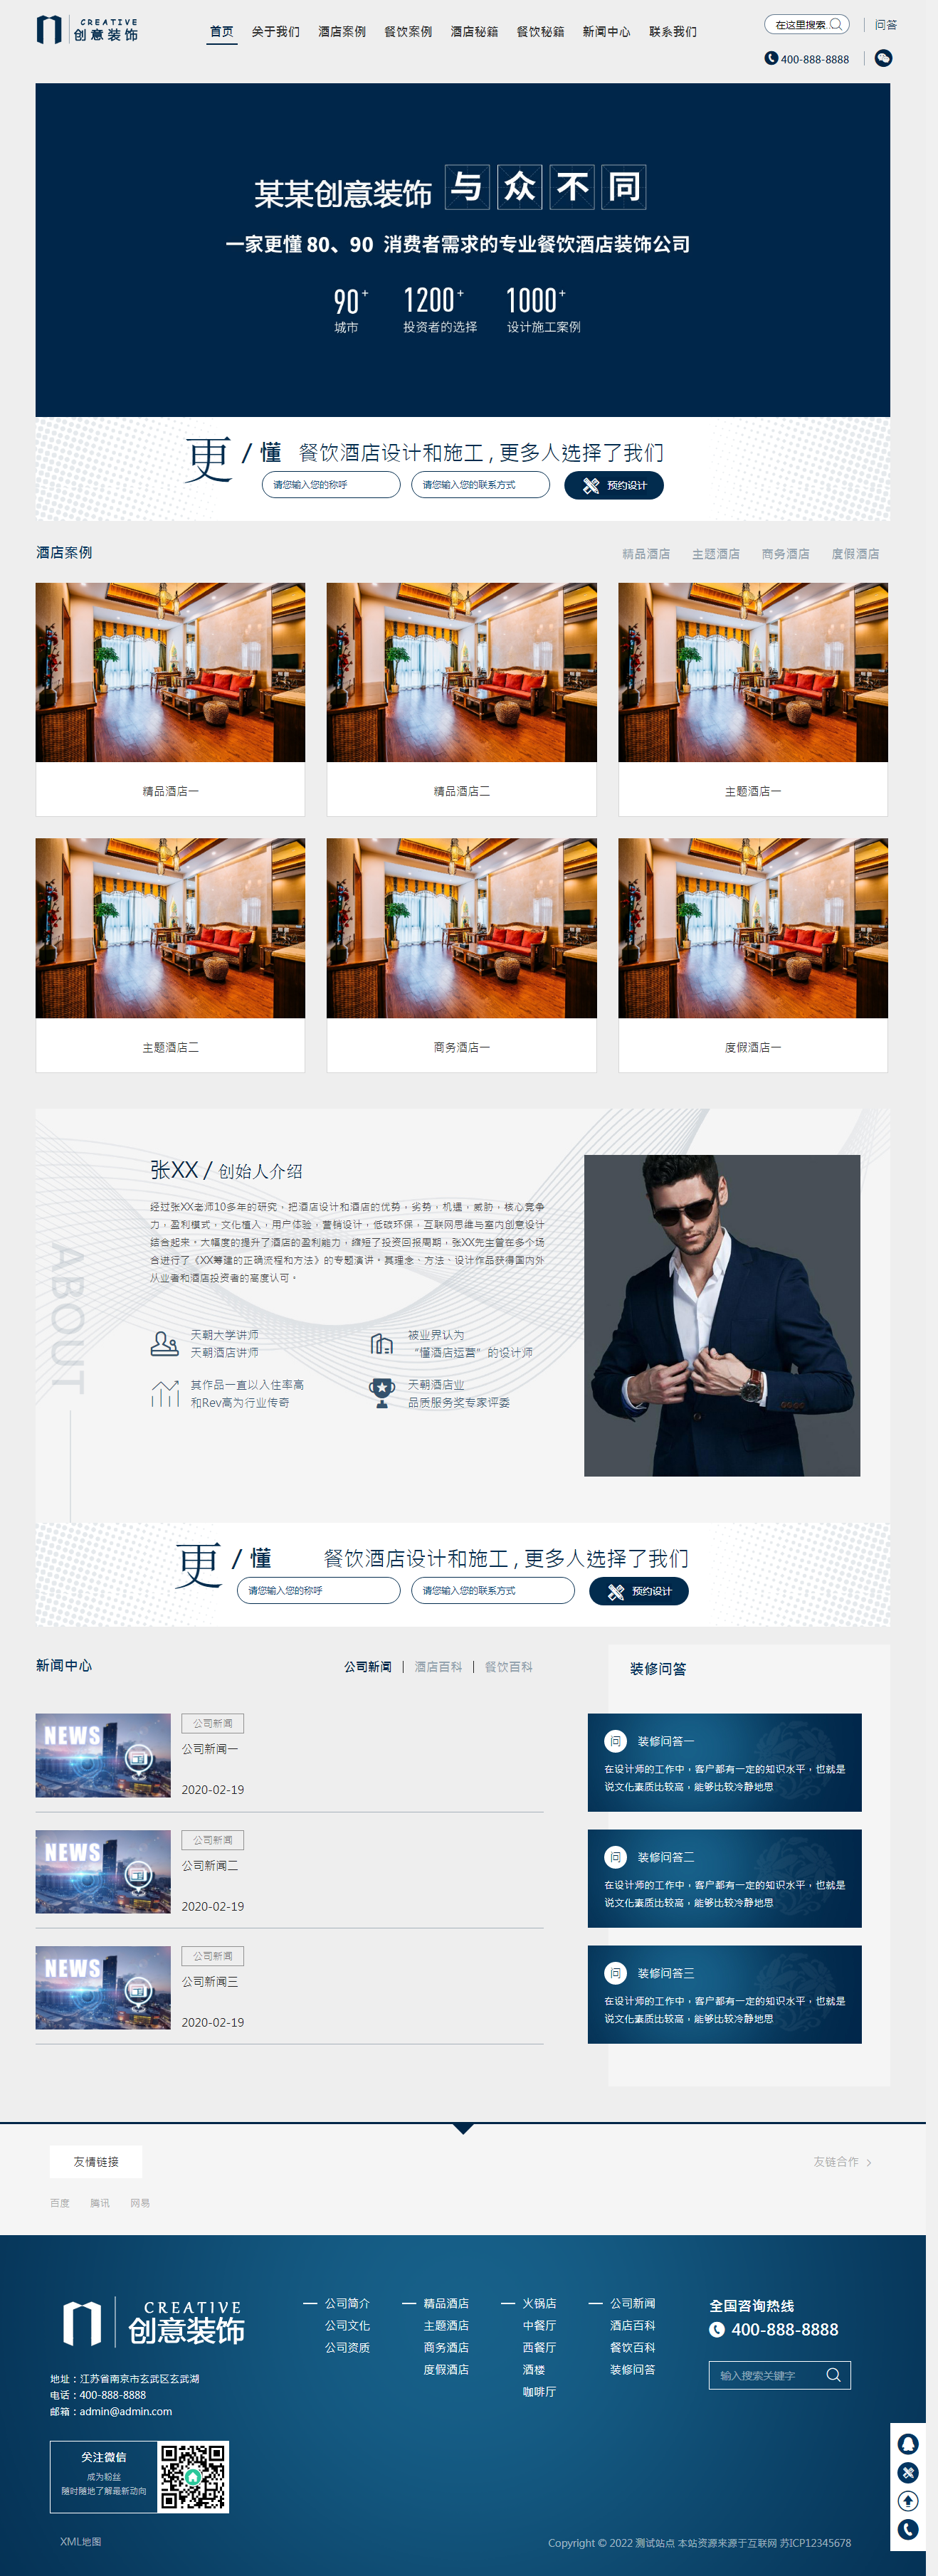 (自适应手机版)响应式创意餐饮酒店装饰设计类网站pbootcms模板 html5蓝色餐饮酒店设计网站.png